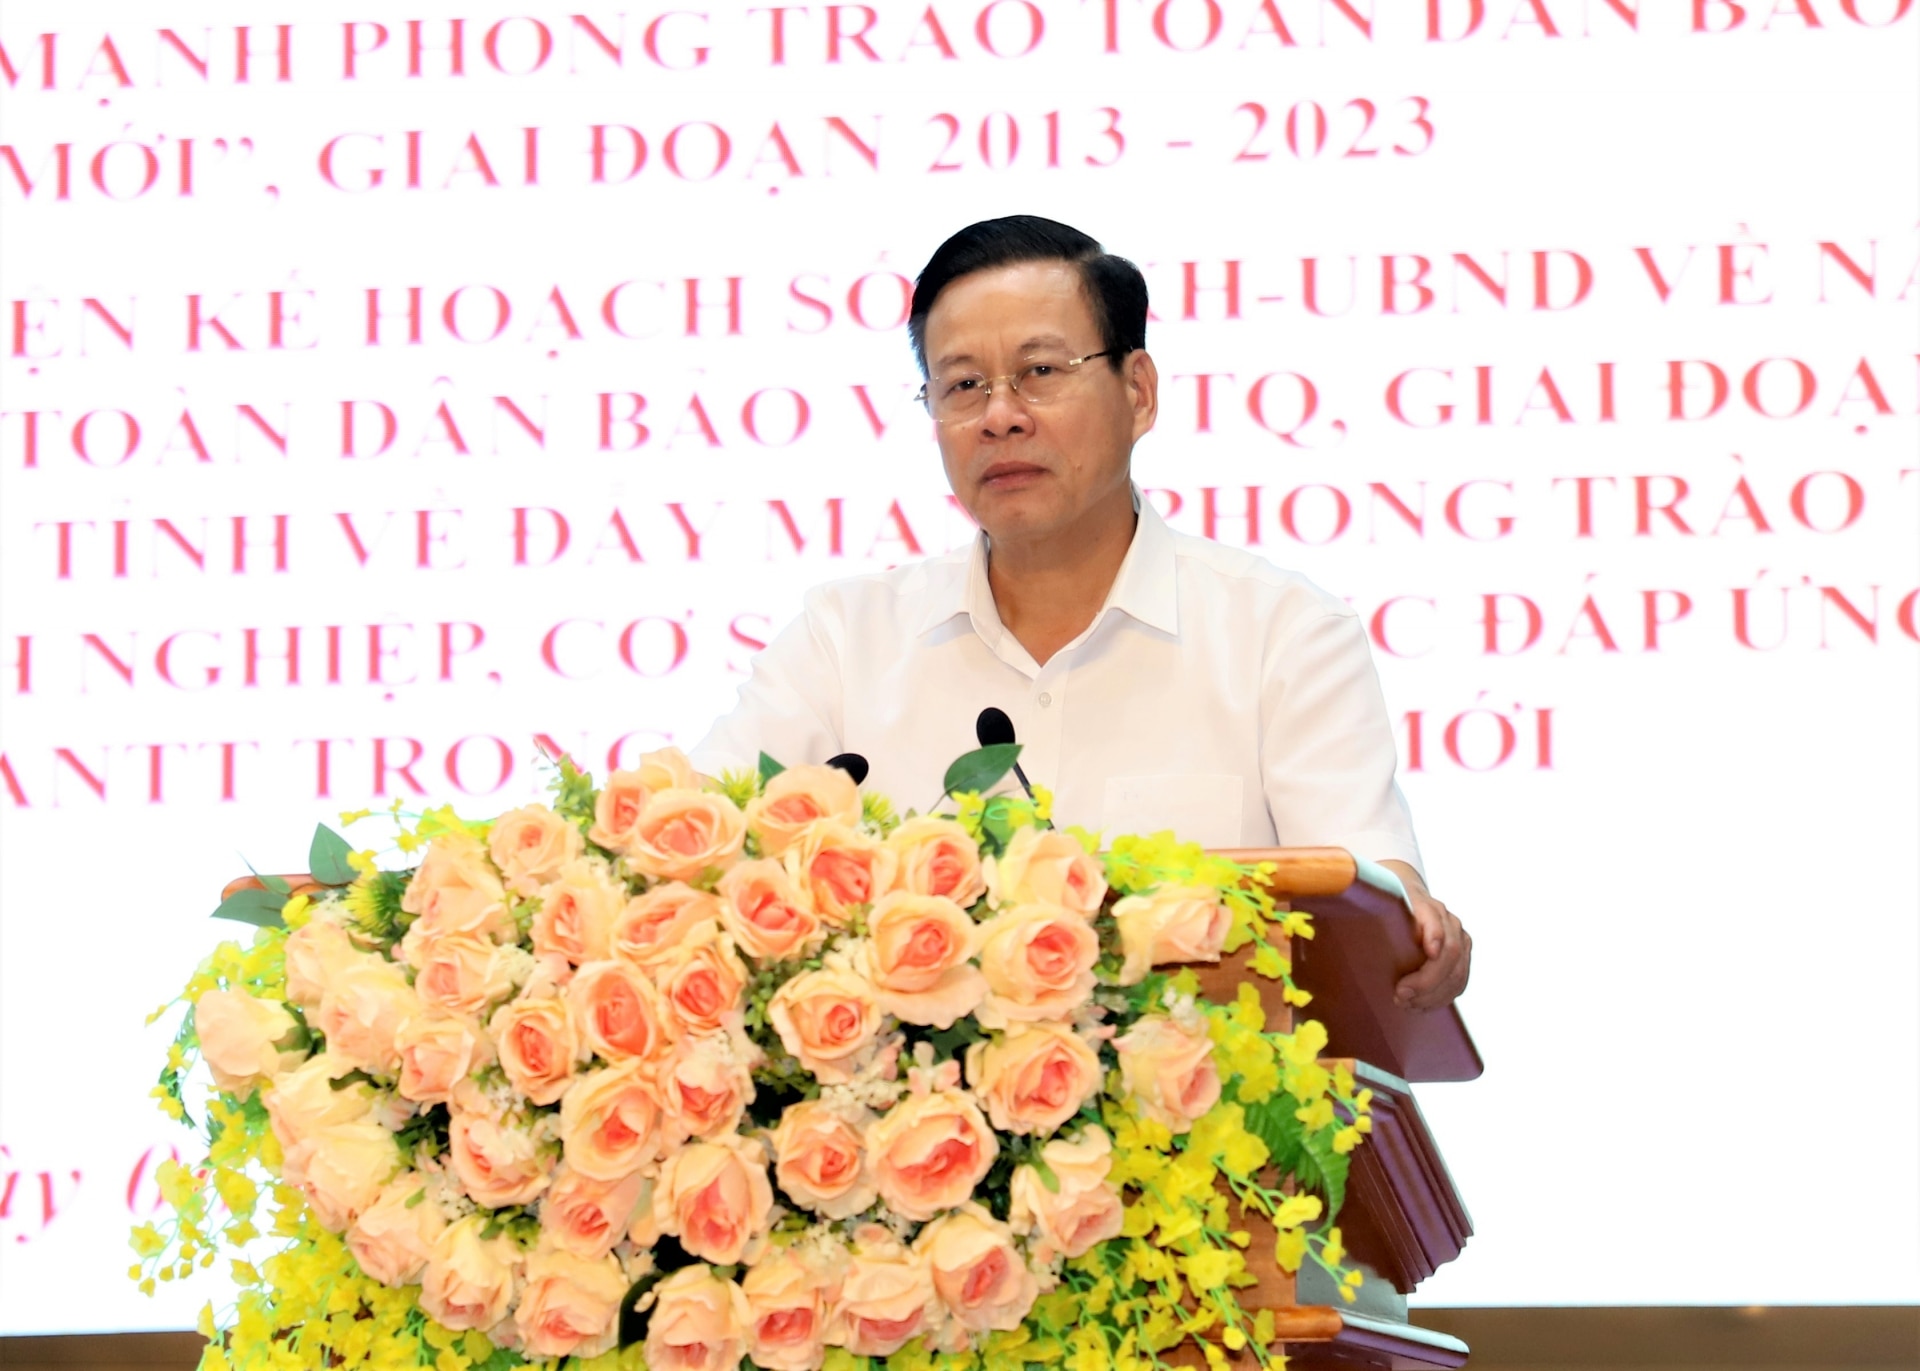 Chủ tịch UBND tỉnh Nguyễn Văn Sơn phát biểu tại hội nghị.